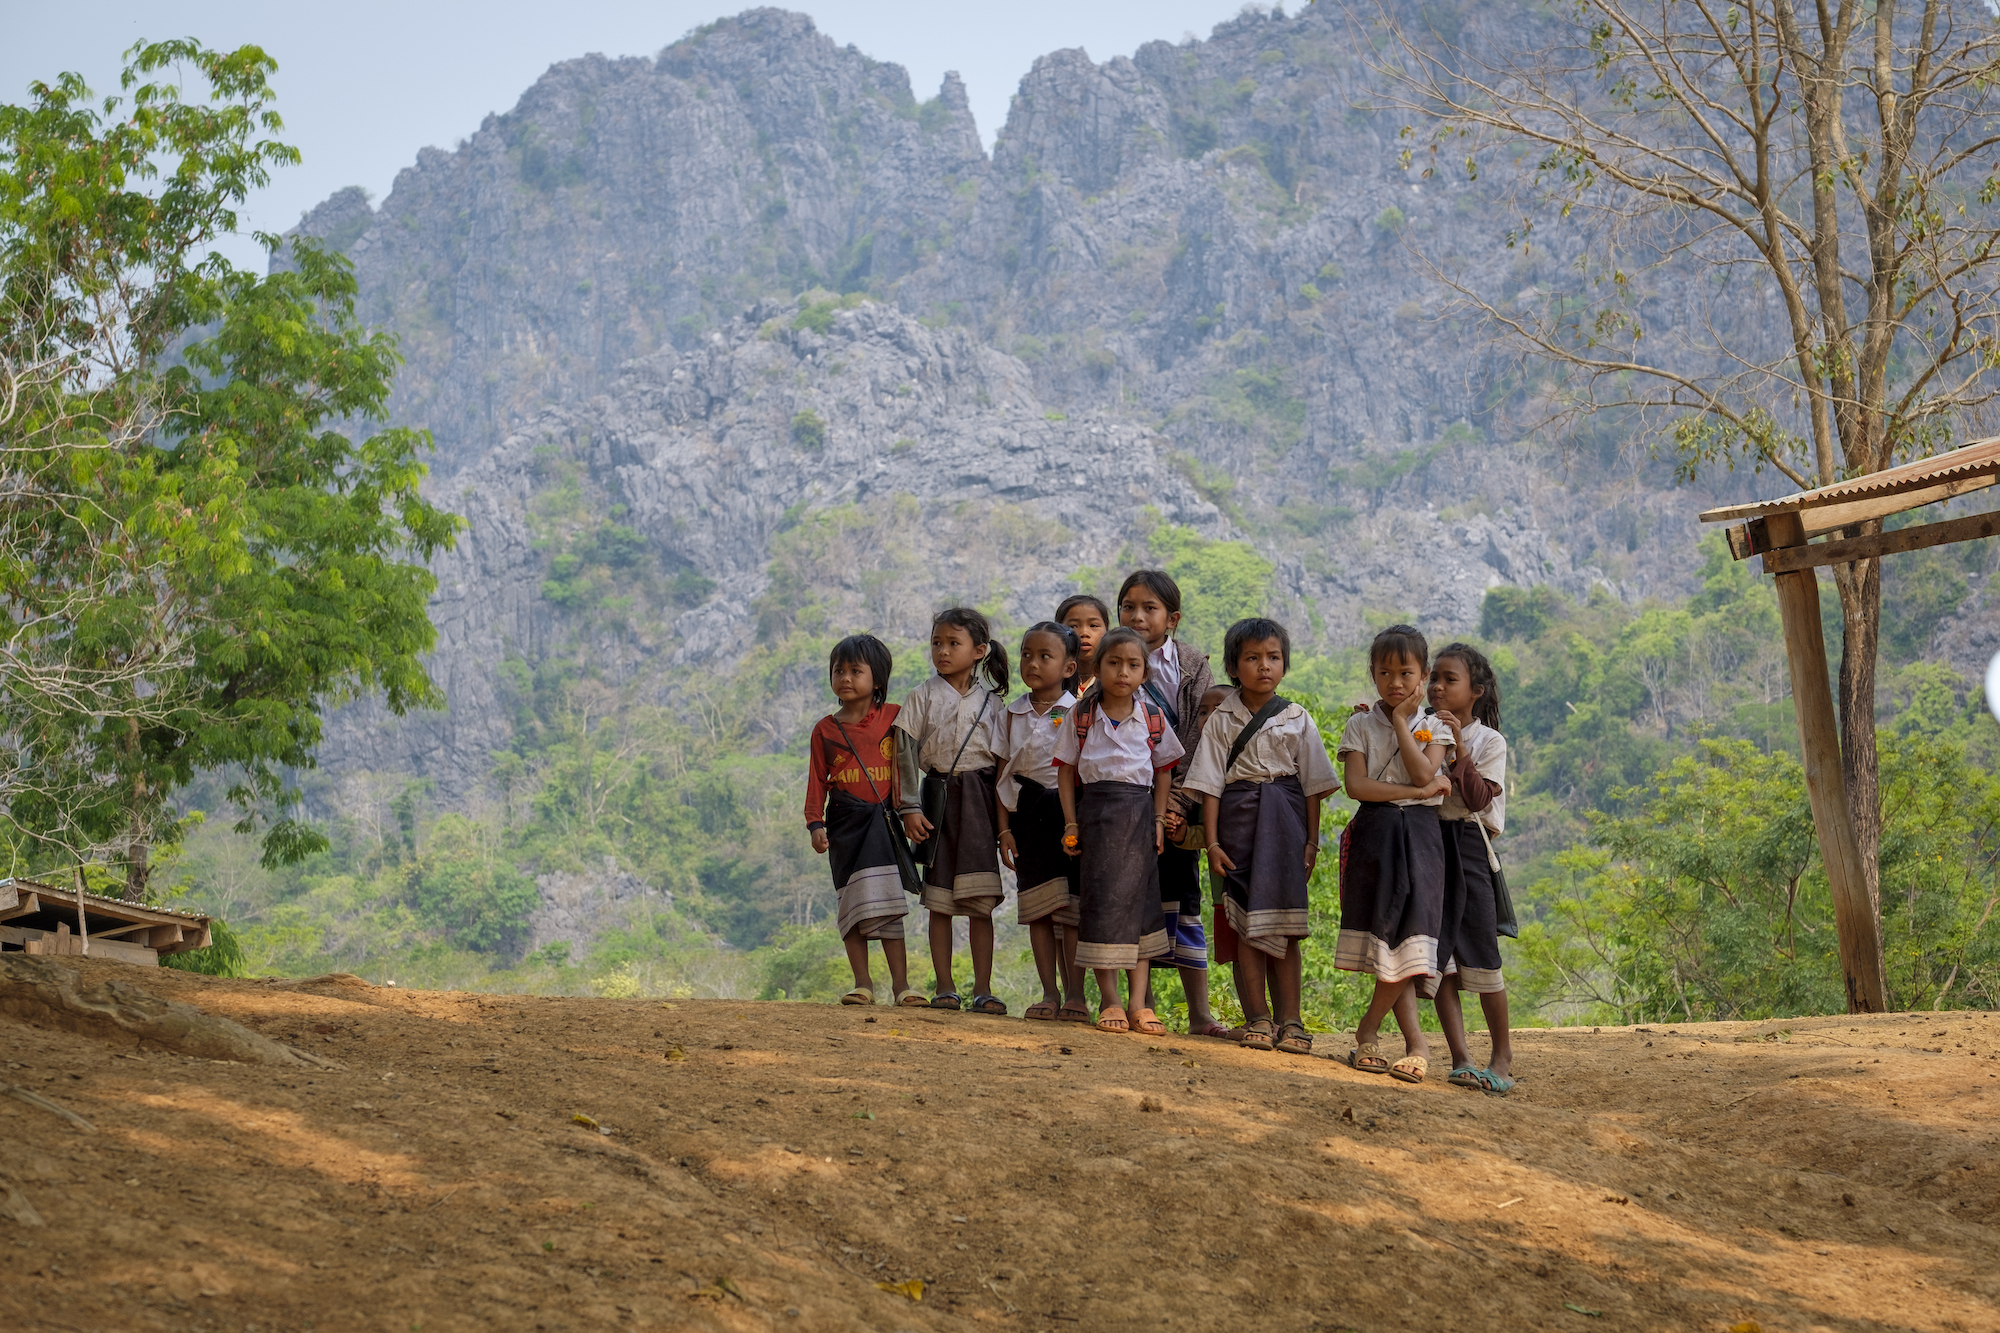 Schoolchildren in Laos